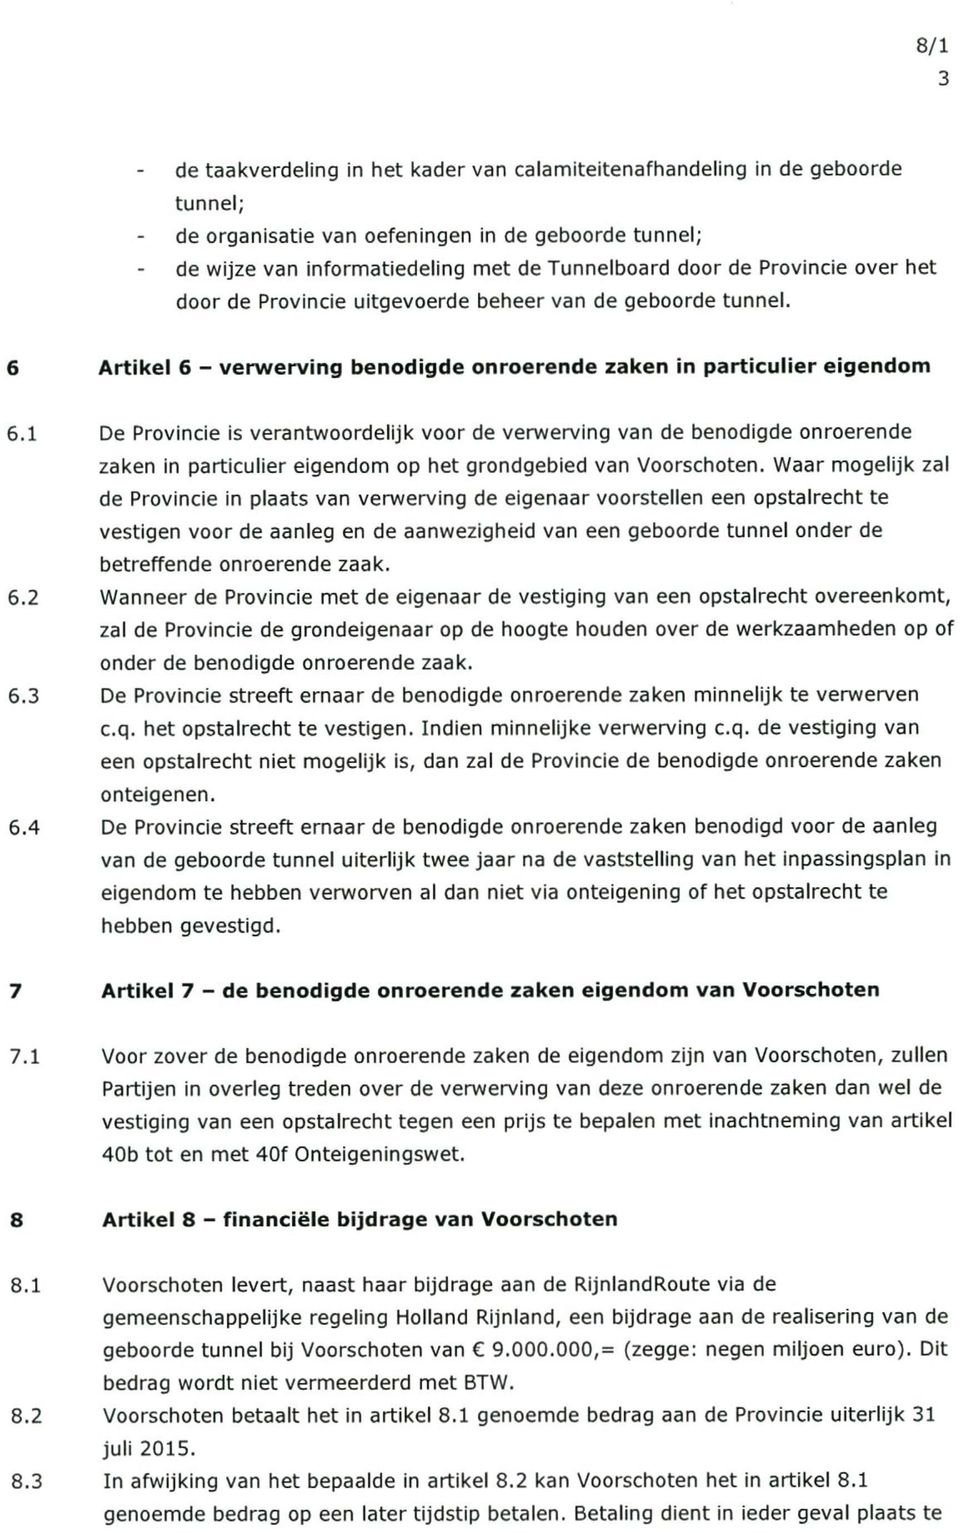 1 De Provincie is verantwoordelijk voor de verwerving van de benodigde onroerende zaken in particulier eigendom op het grondgebied van Voorschoten.